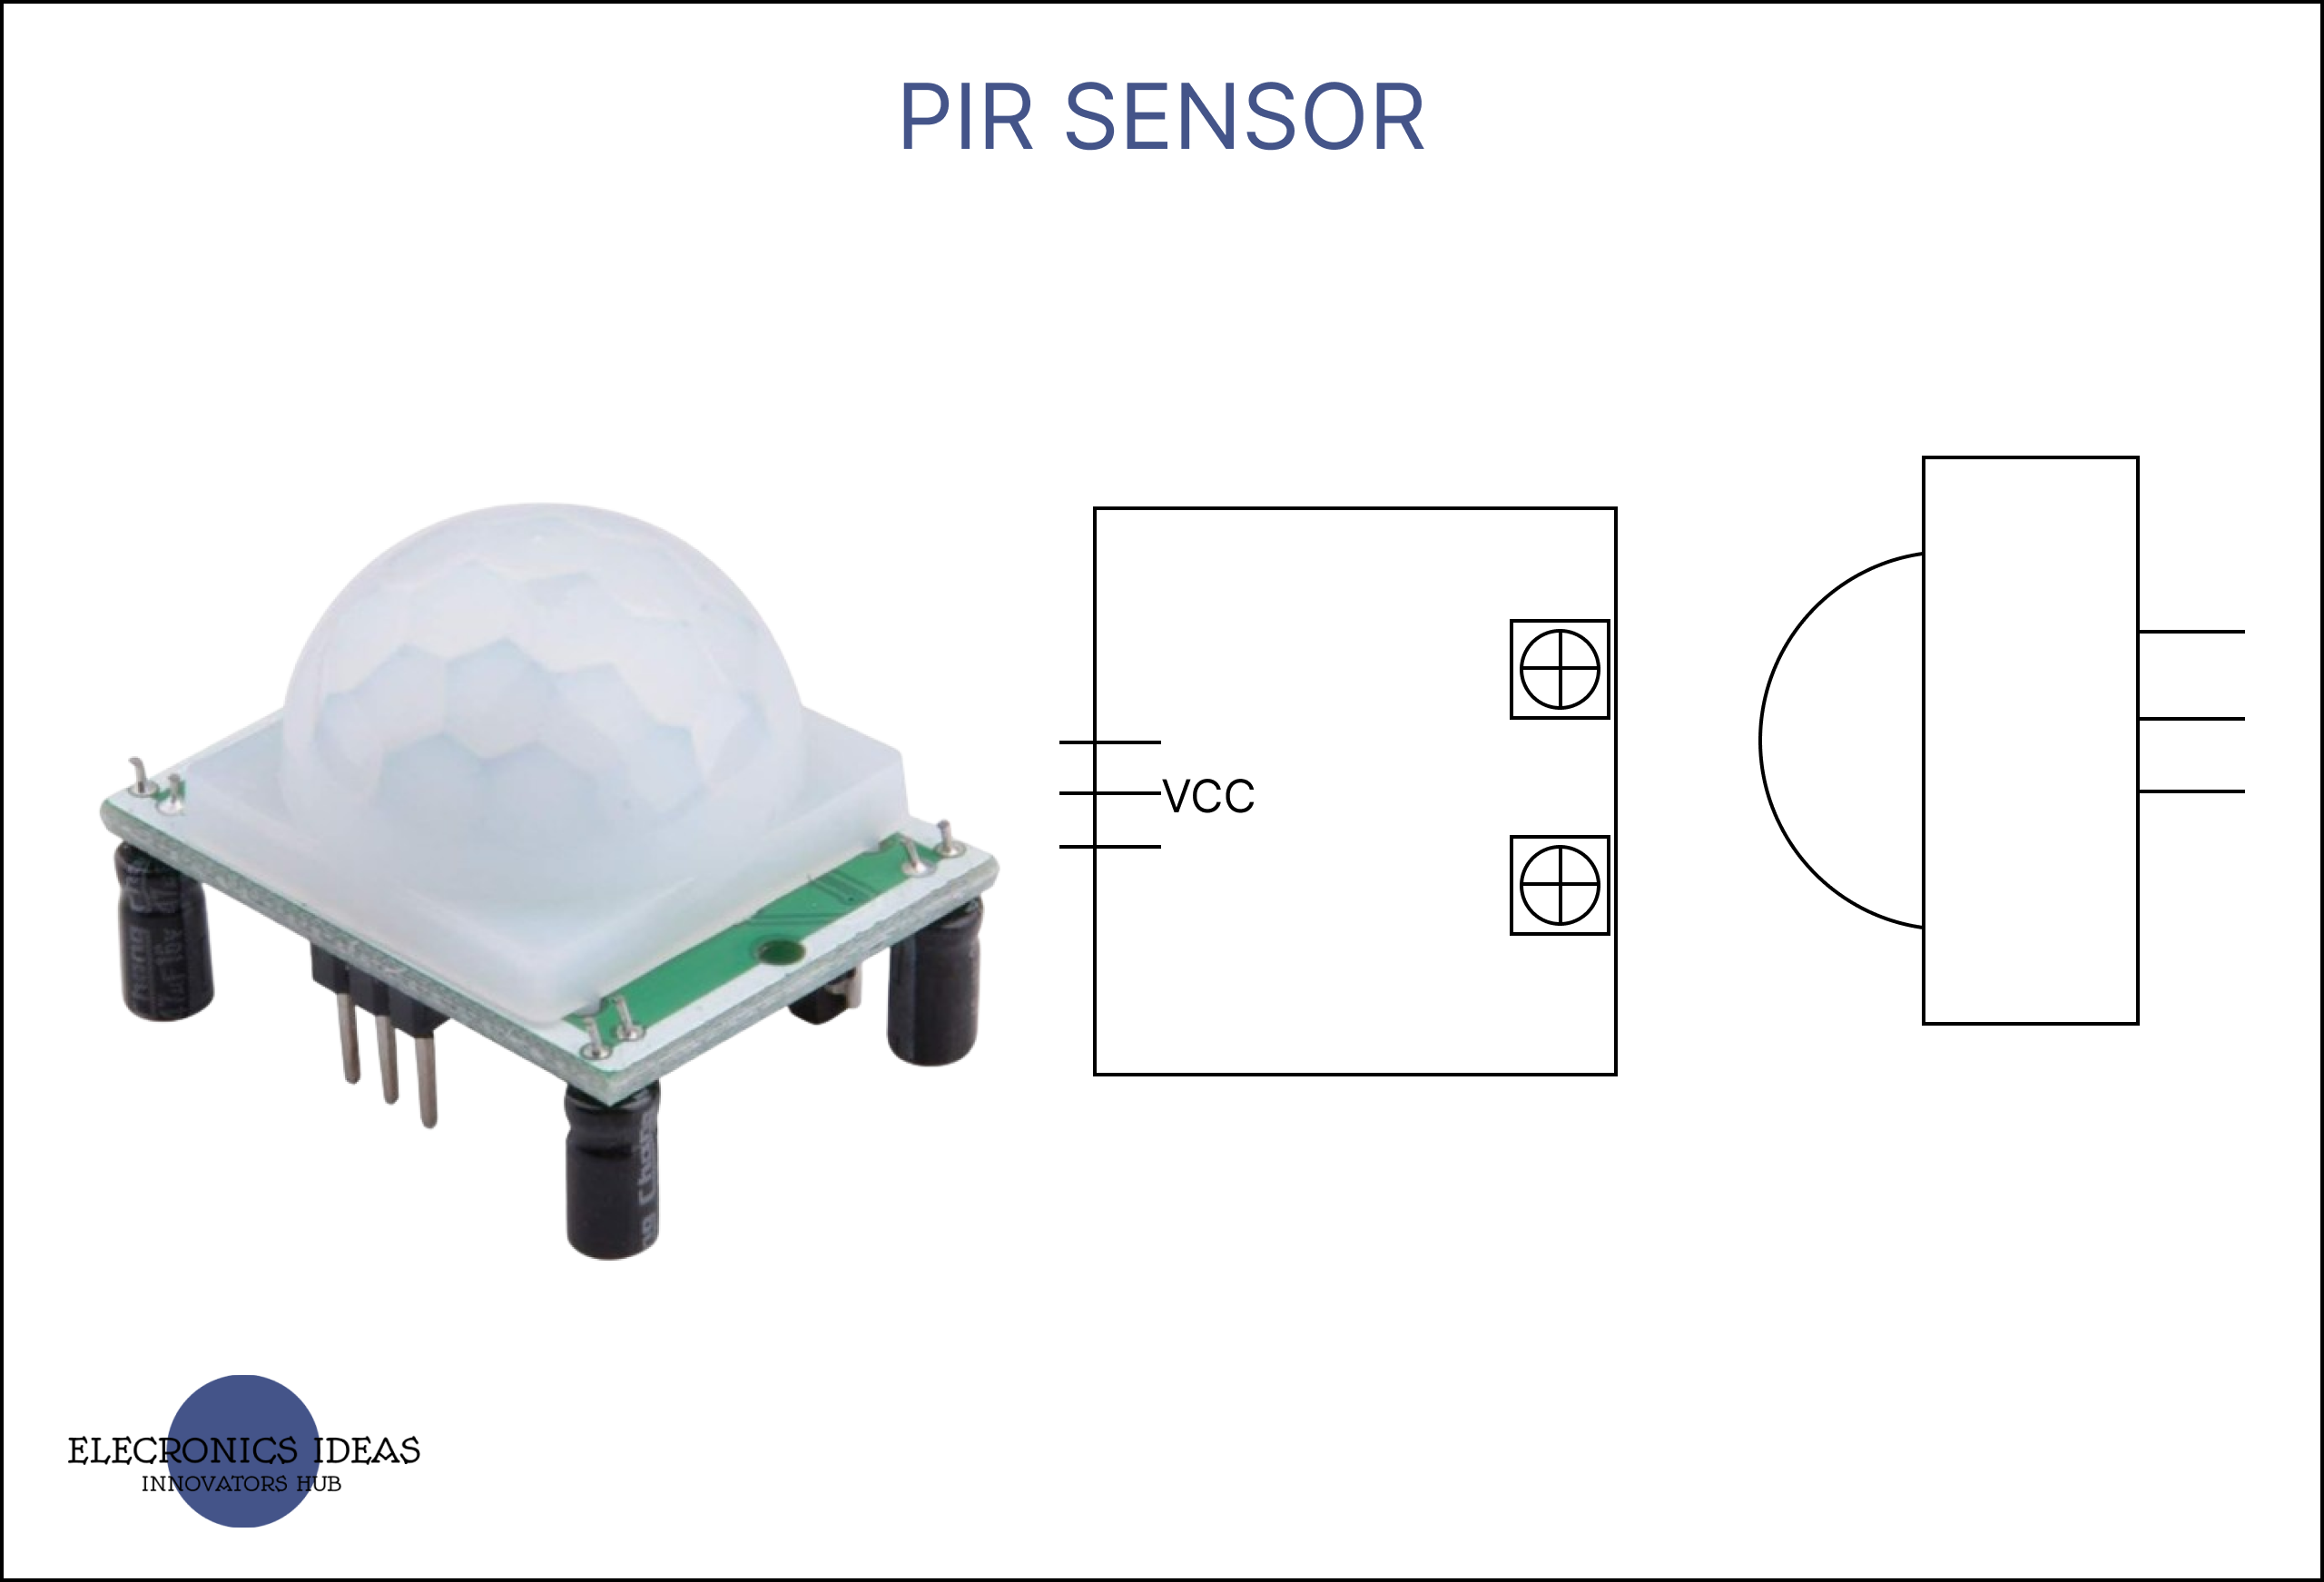 PIR sensors